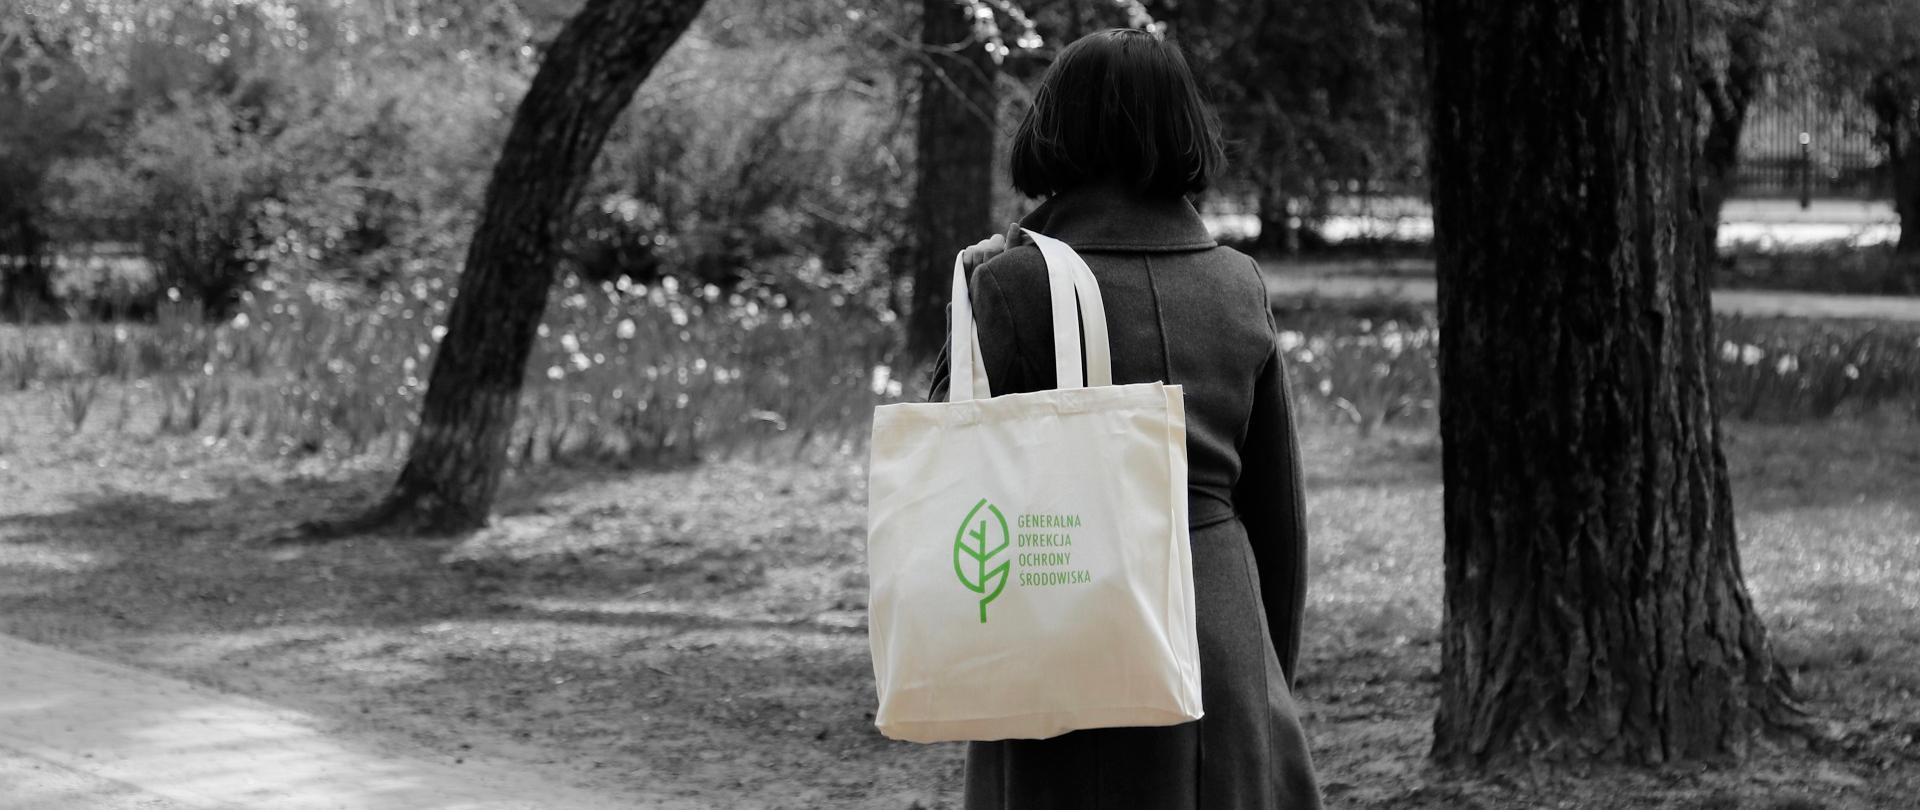 Fotografia w parku. Widać pnie drzew. Kobieta ma przerzuconą przez ramię ciemną torbę z reprodukcją obrazu oraz logotypem (biały listek) i napisem Generalna Dyrekcja Ochrony Środowiska.